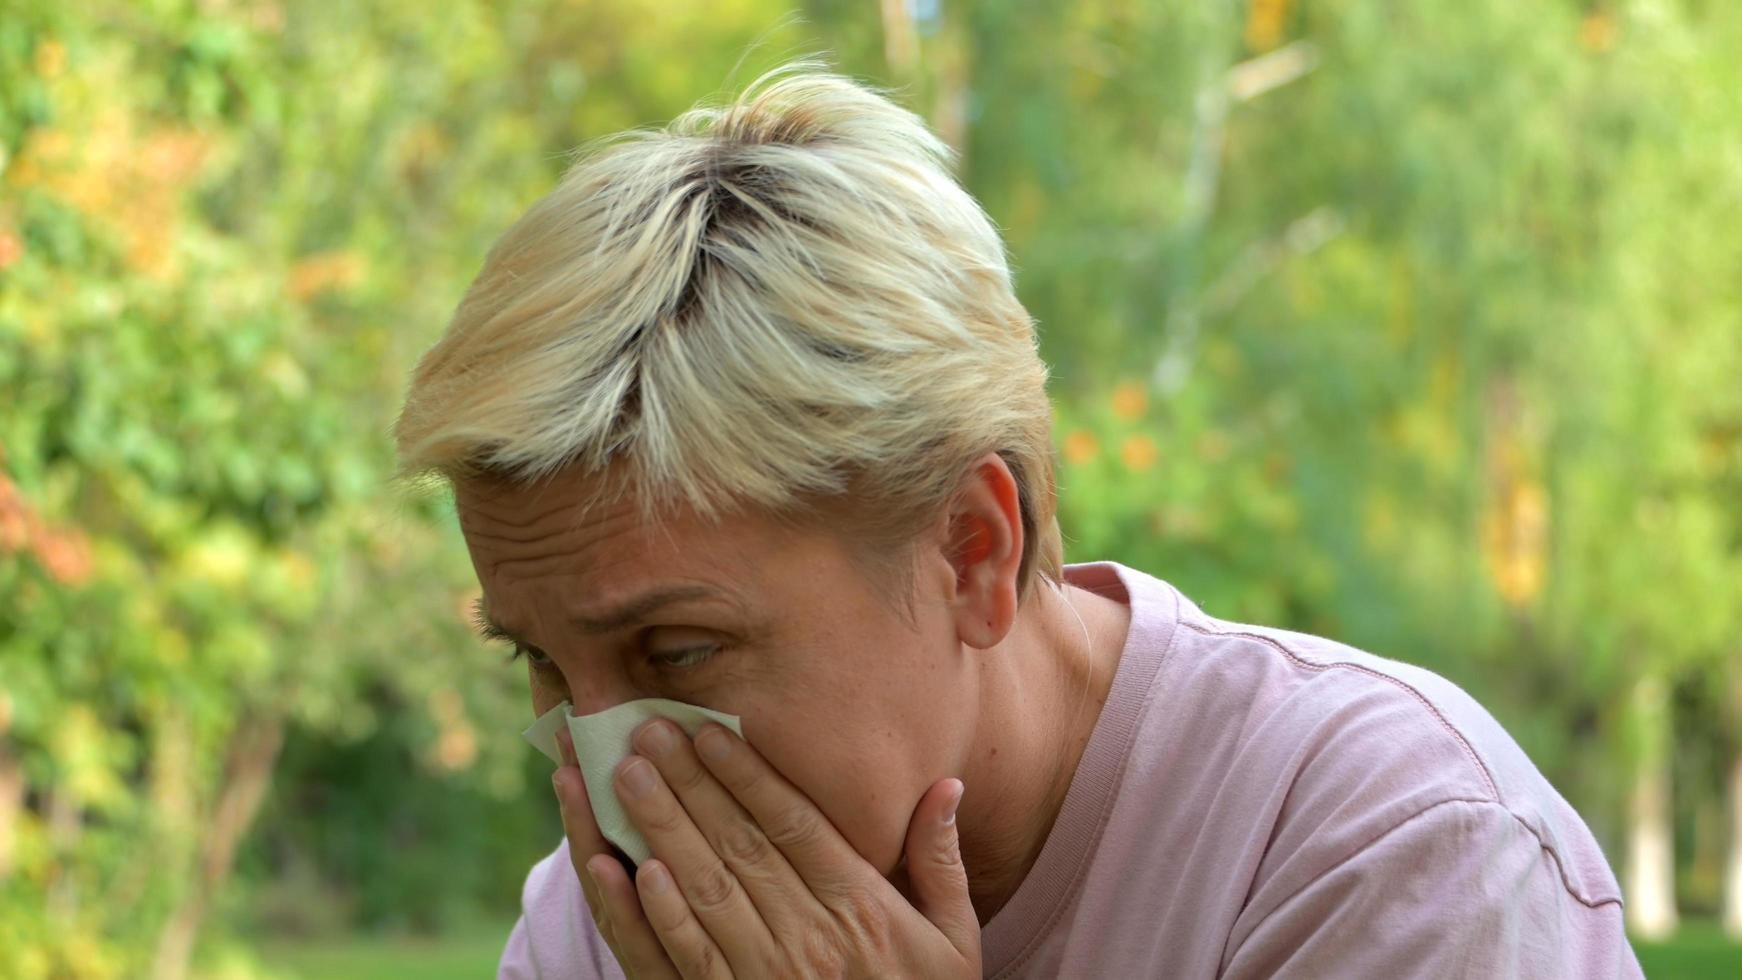 en tjej med blont hår och kort frisyr nyser av allergier och torkar näsan med en servett mot bakgrunden av grön natur foto